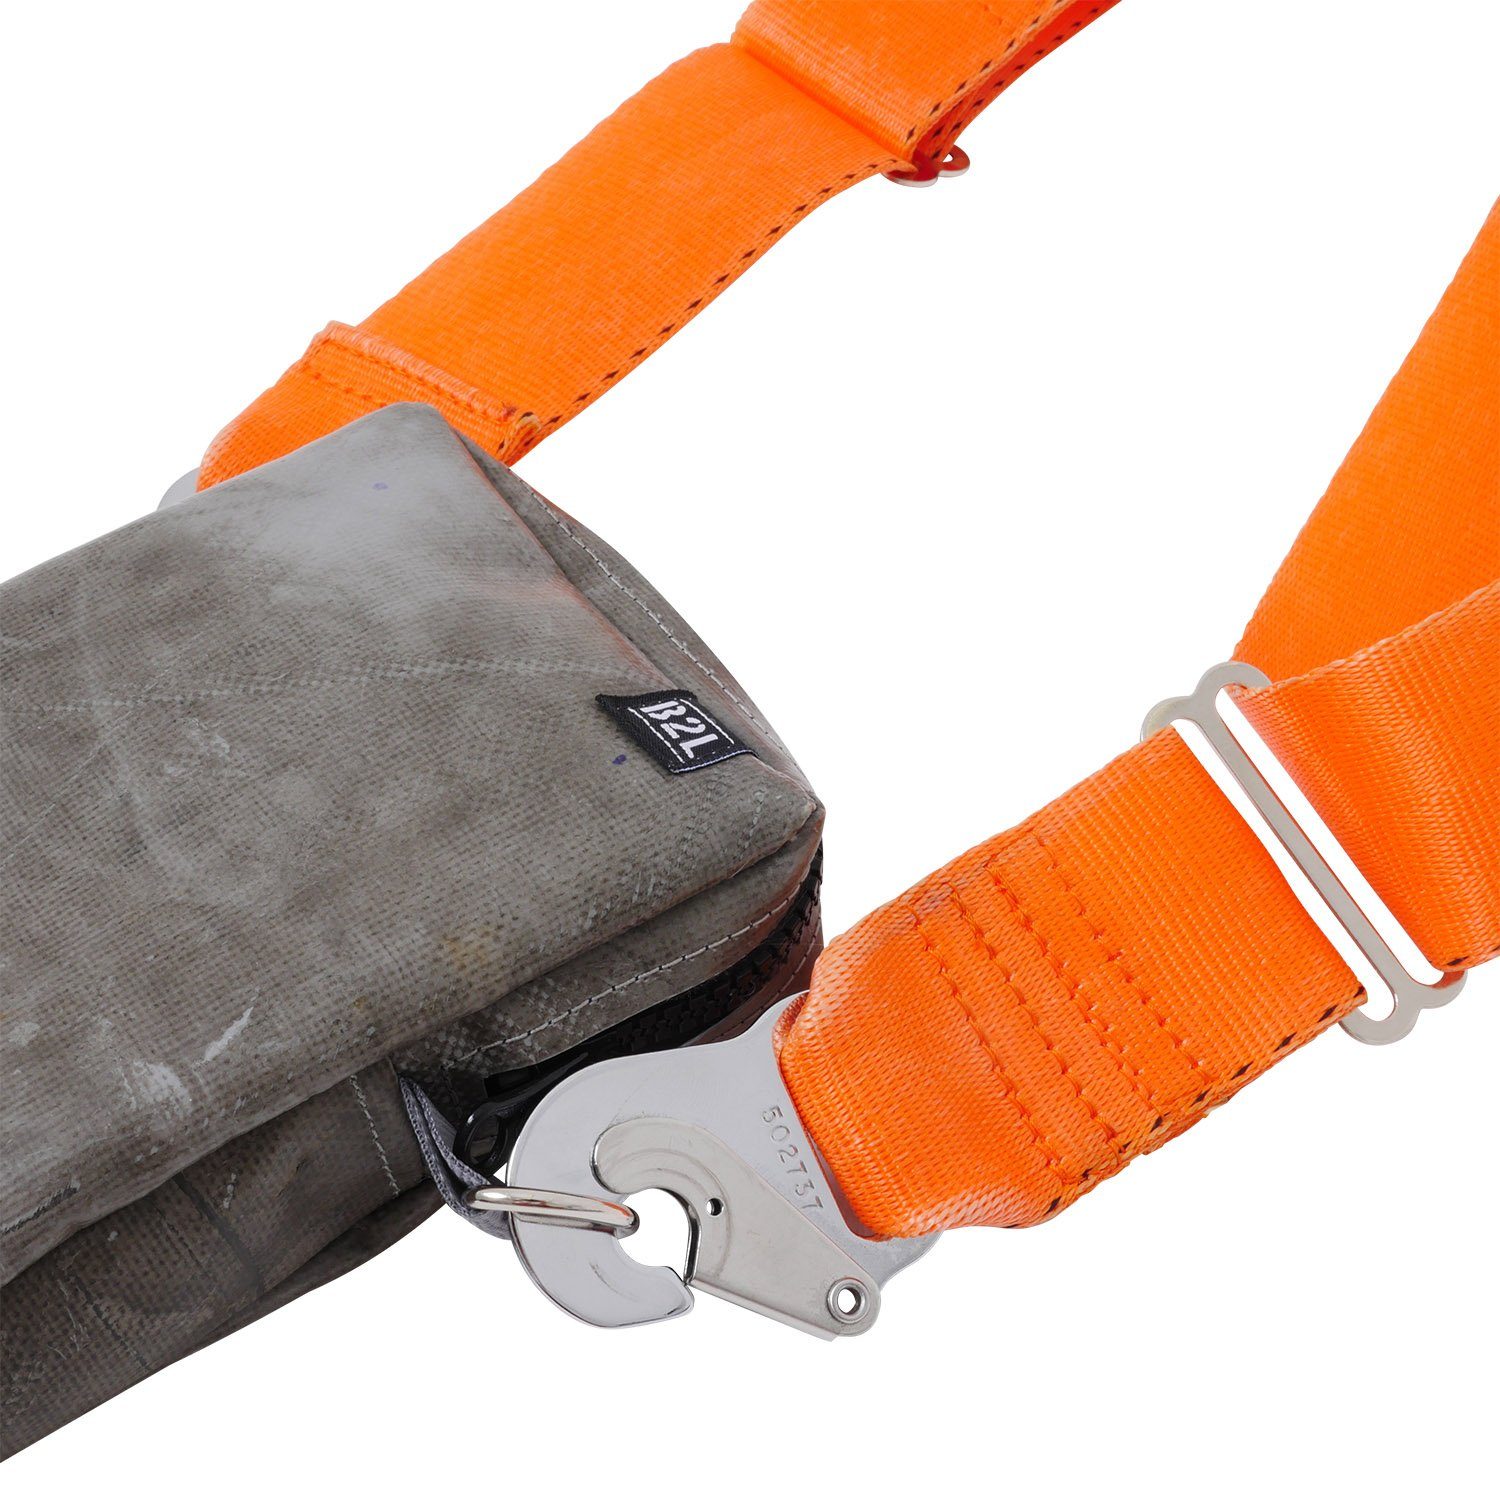 Bag to Life Umhängetasche praktischen ULD im Design Jettainer Bag, Crossover